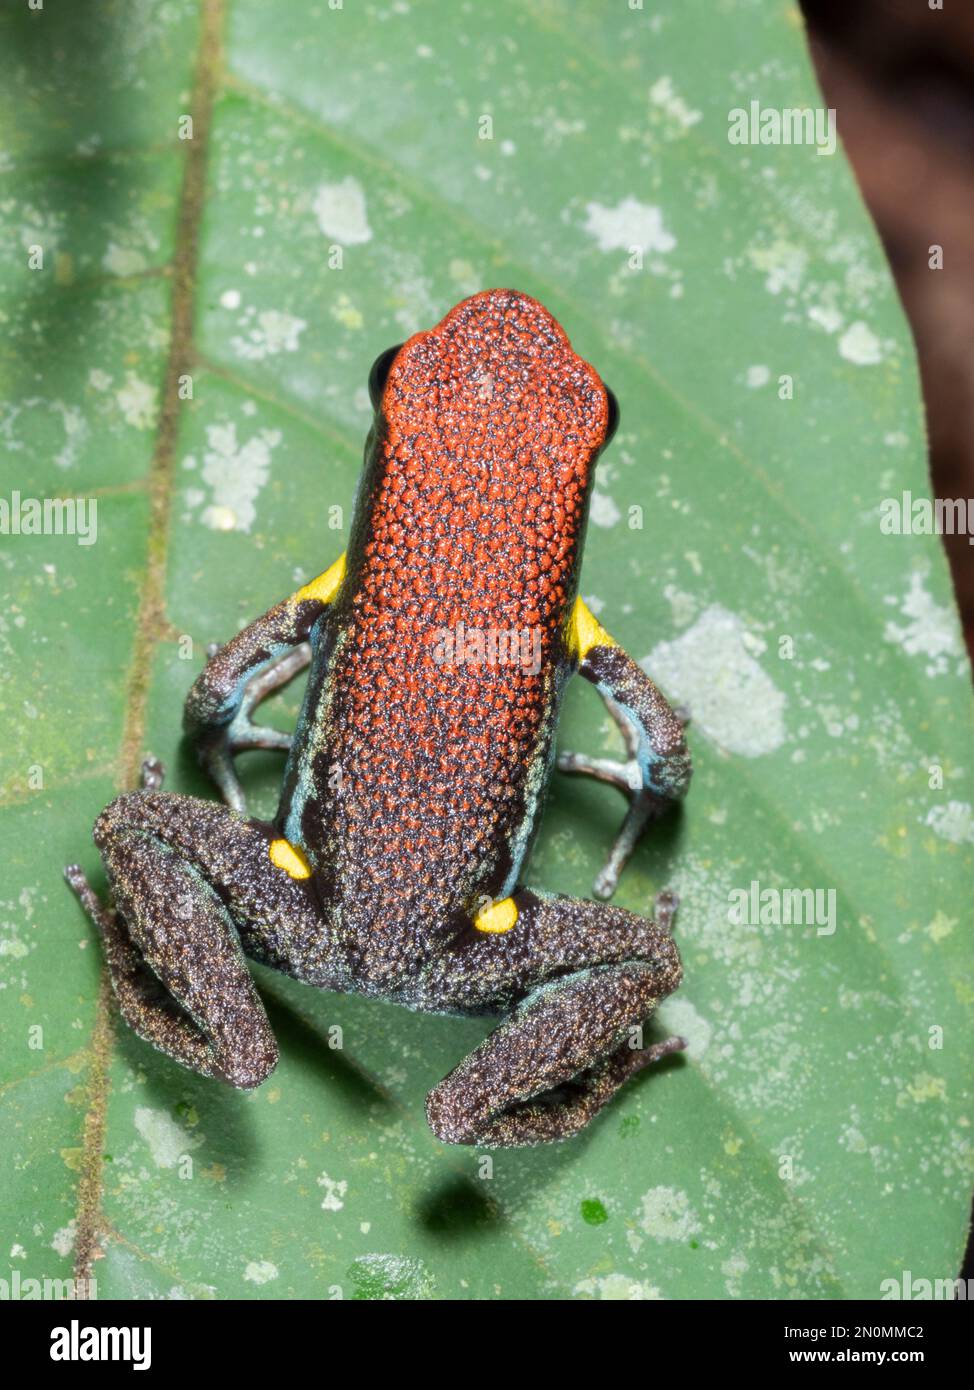 Ecuadorian poison frog (Ameerega bilinguis) In tropical rainforest in the Ecuadorian Amazon. Stock Photo